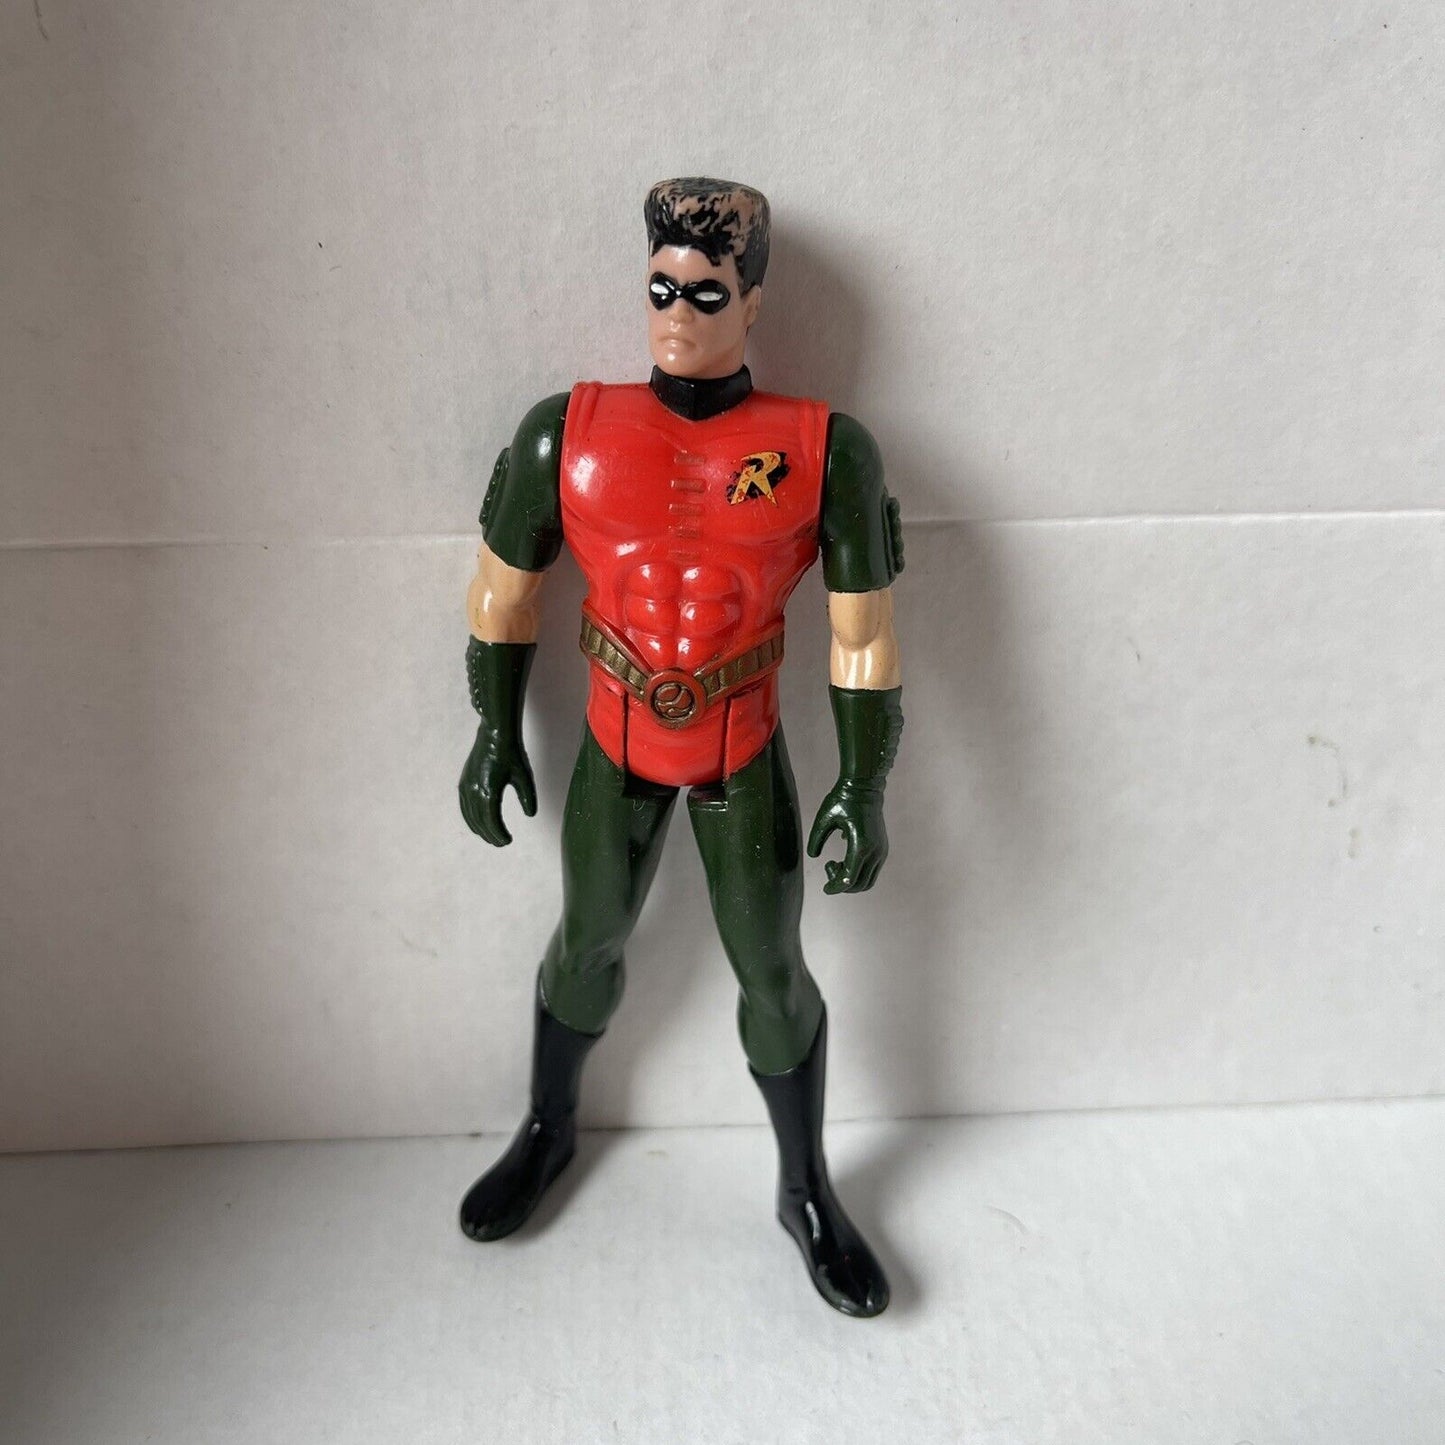 Robin - 1992 Kenner DC Comics Batman Returns Action Figure No Cape